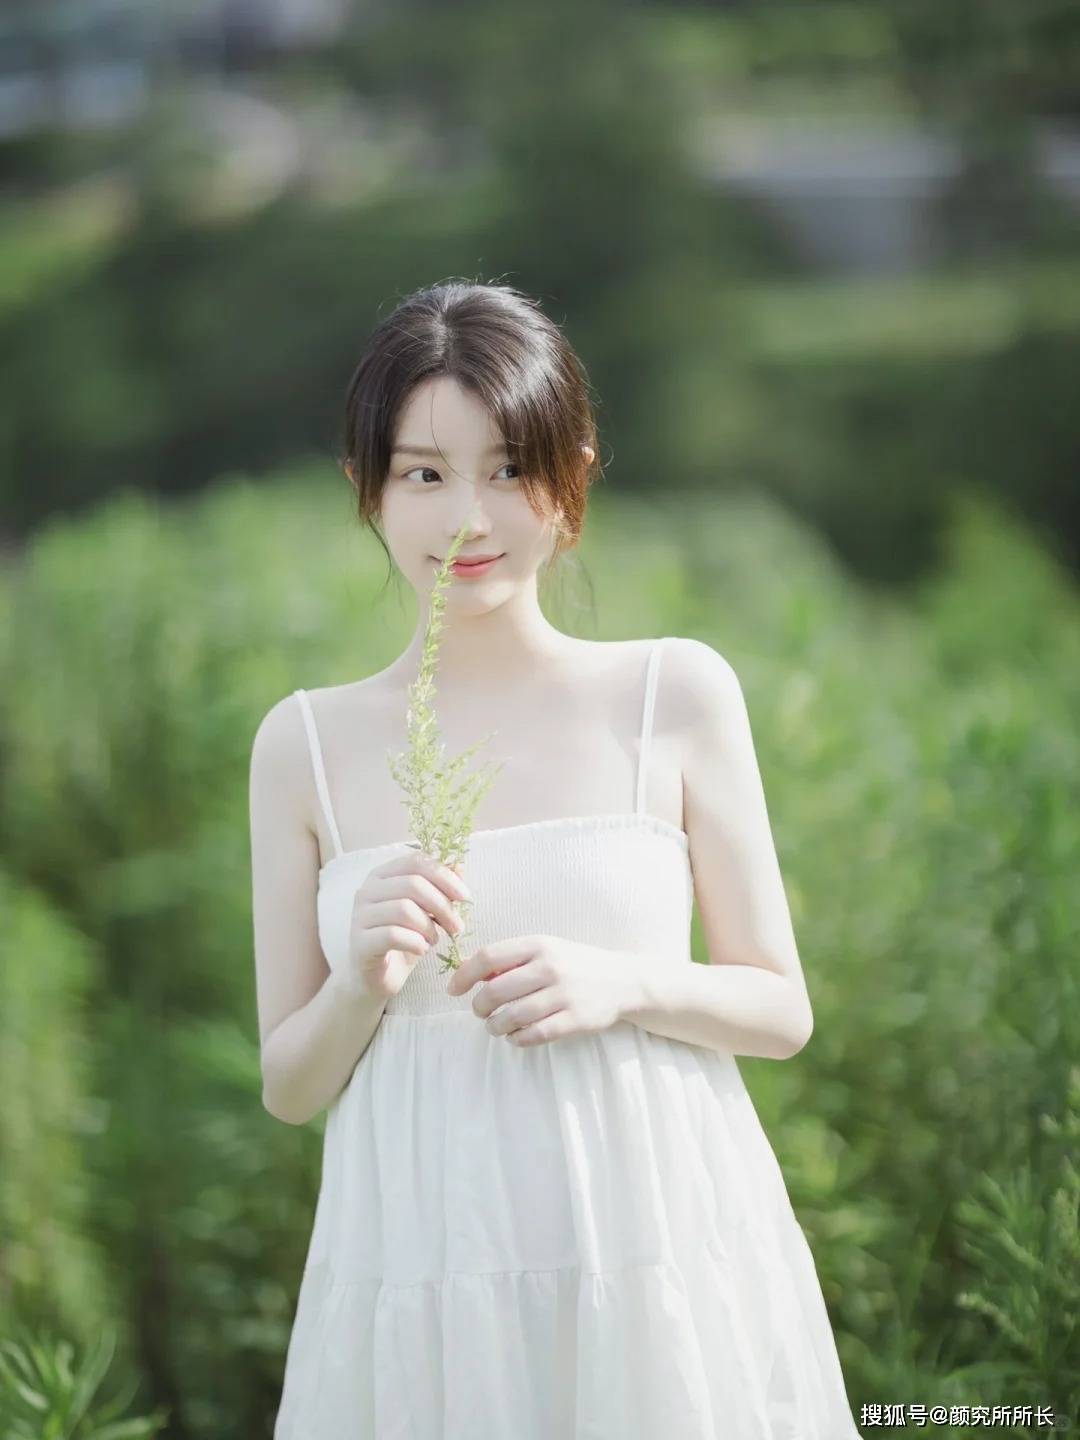 纯白色尤物女孩的乡村穿搭:梦幻般的白色吊带裙就像仙女下凡。